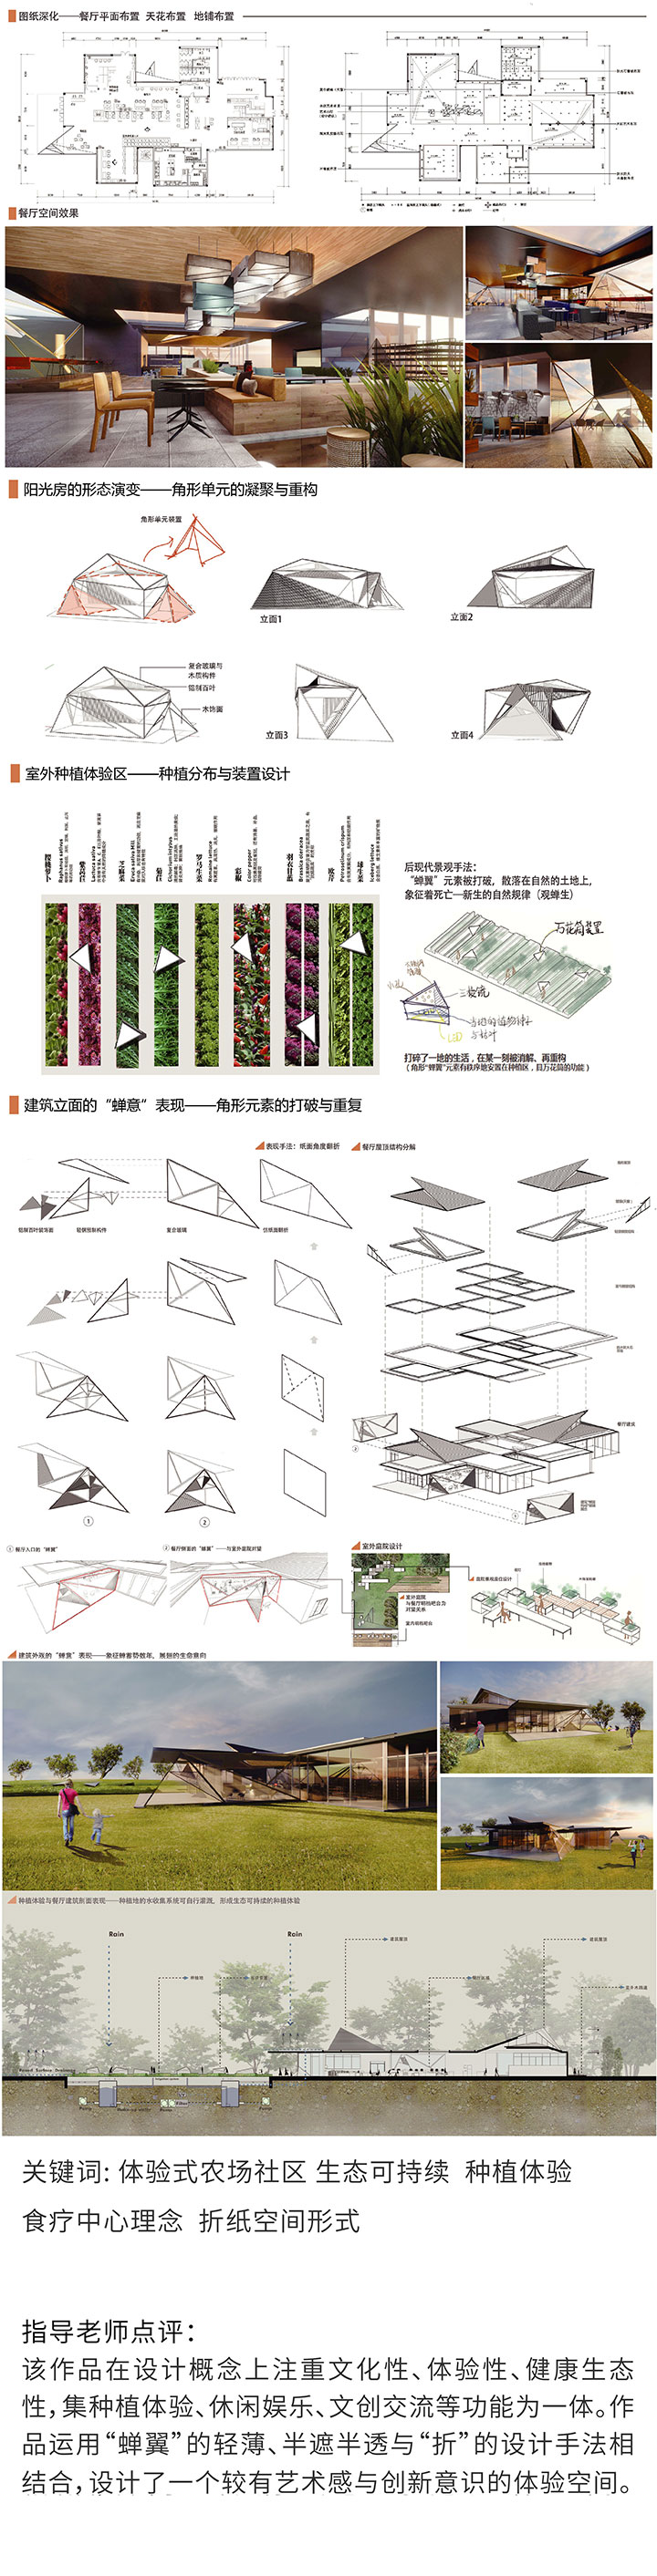 环境设计——观禅生 品禅意-设计中国